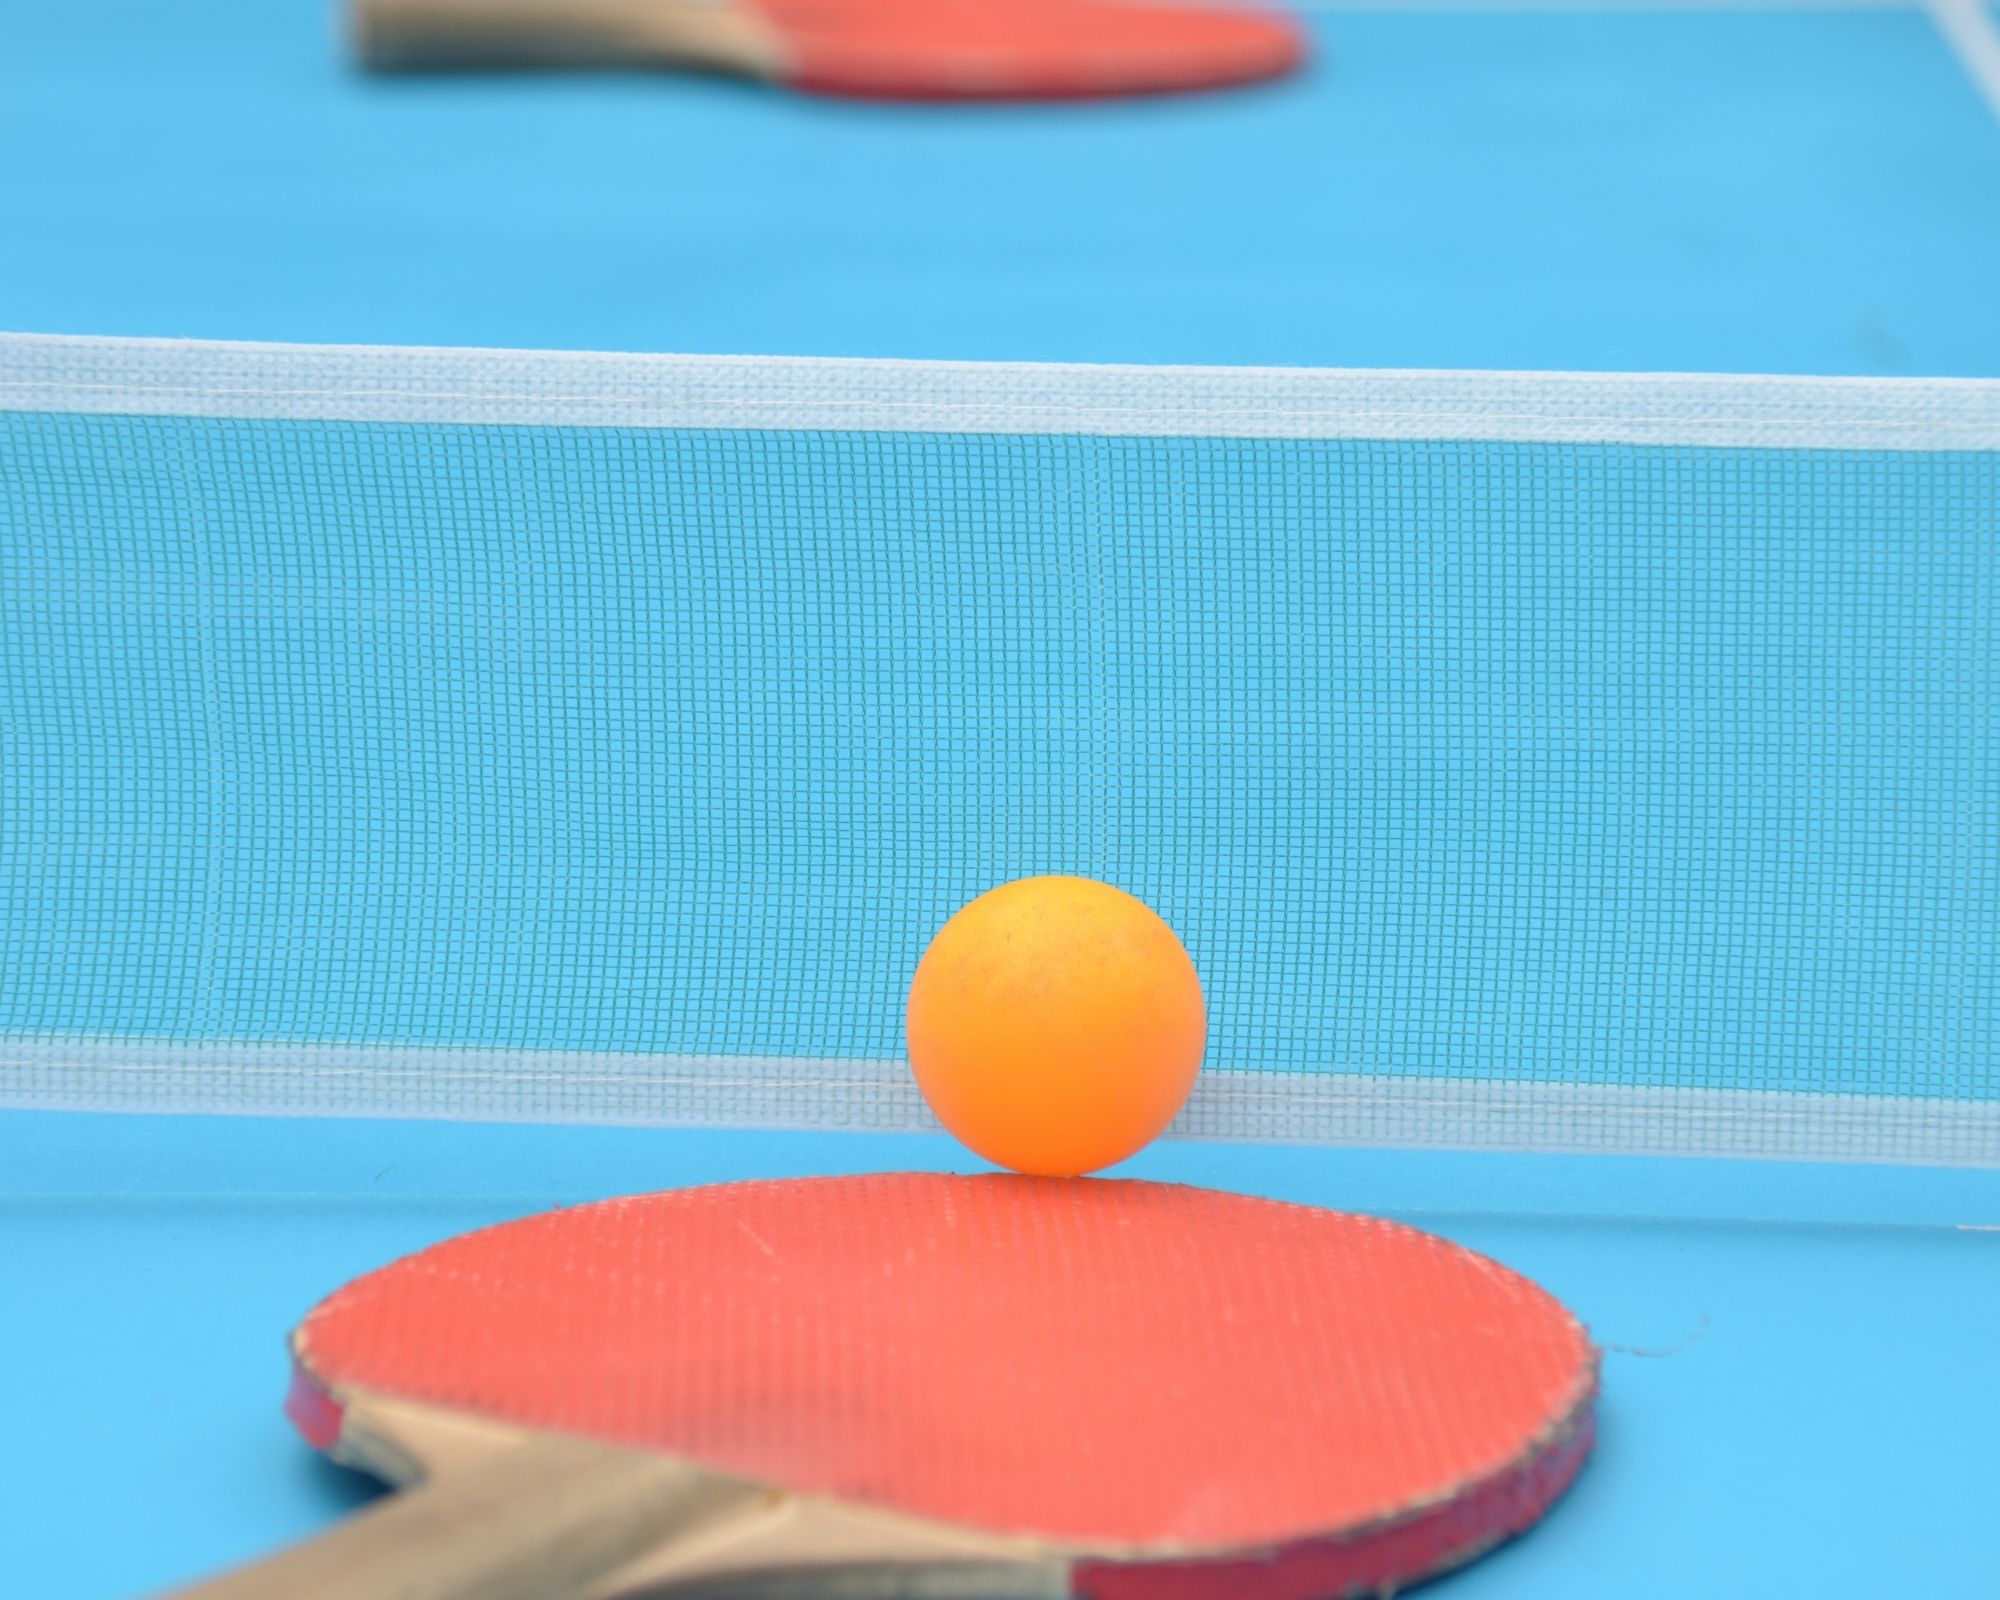 Comment installer une table de ping-pong ?